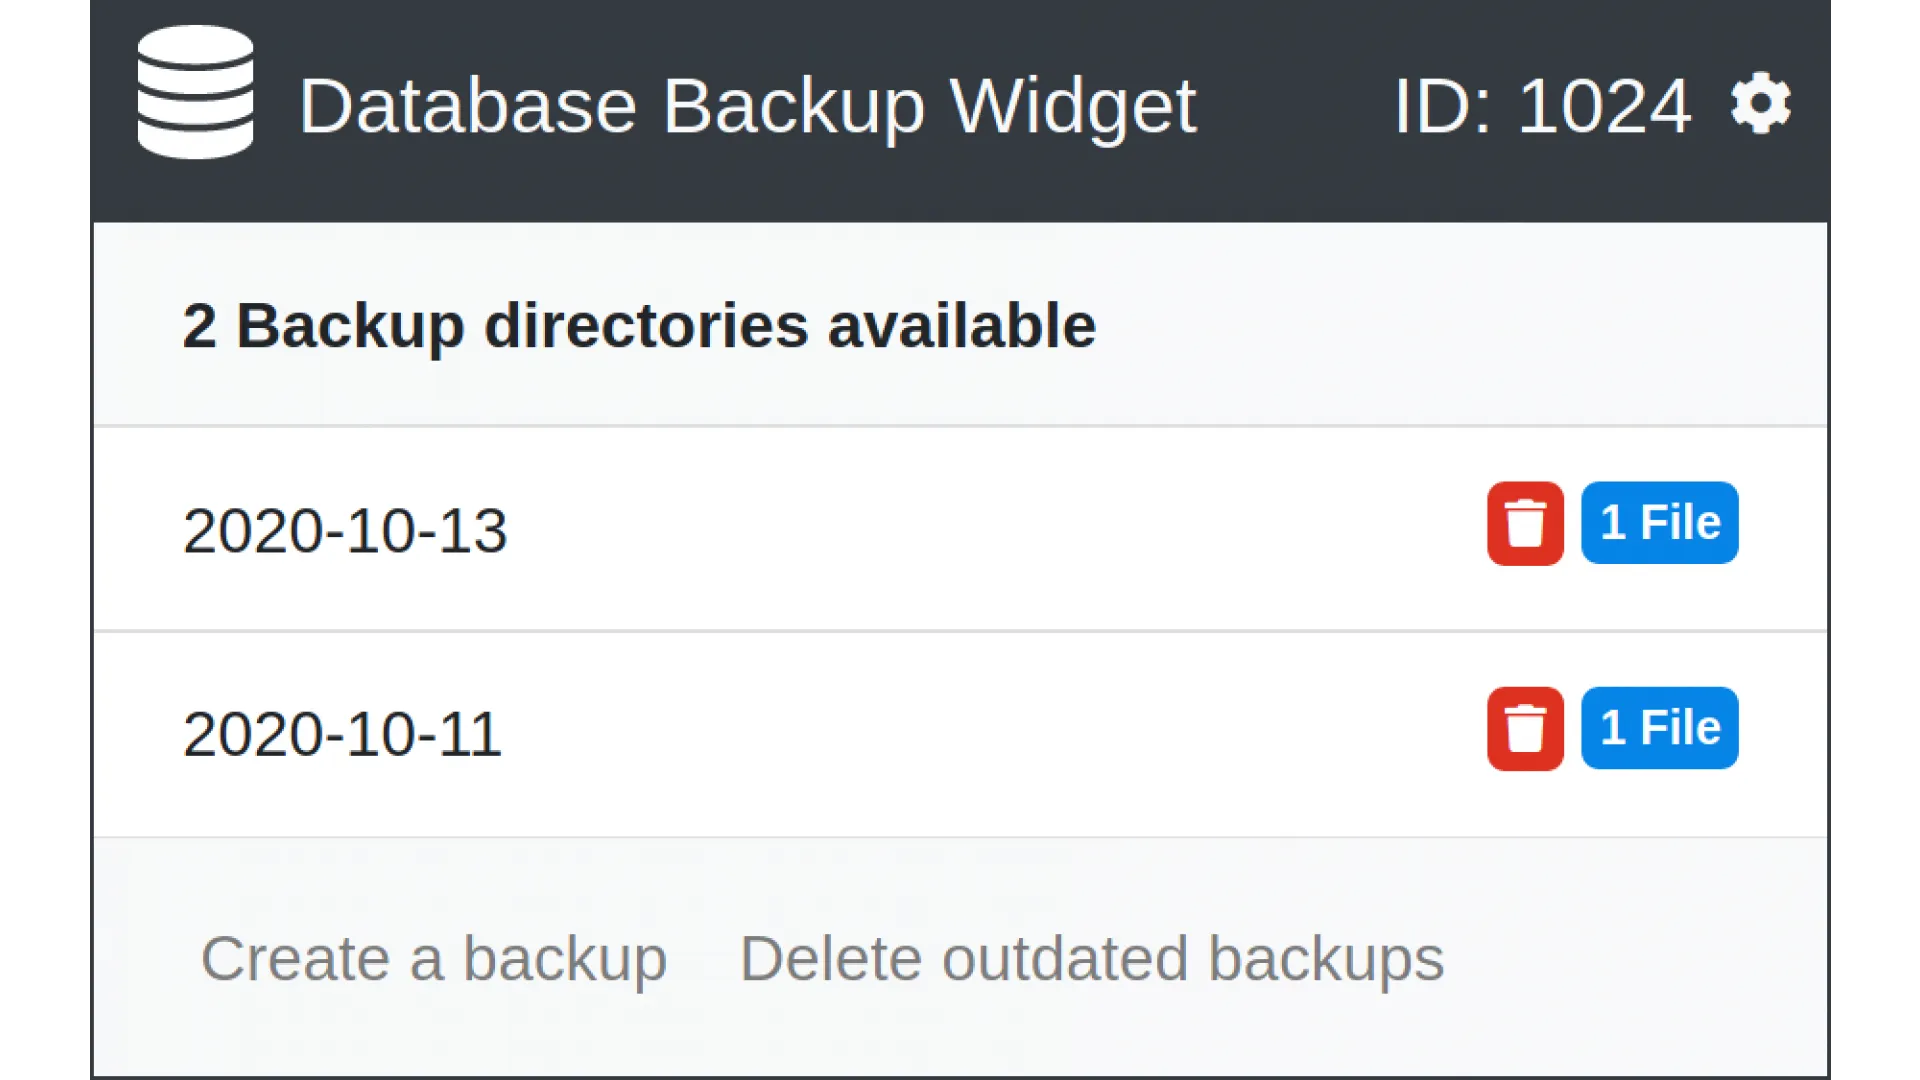 Database Backup Widget